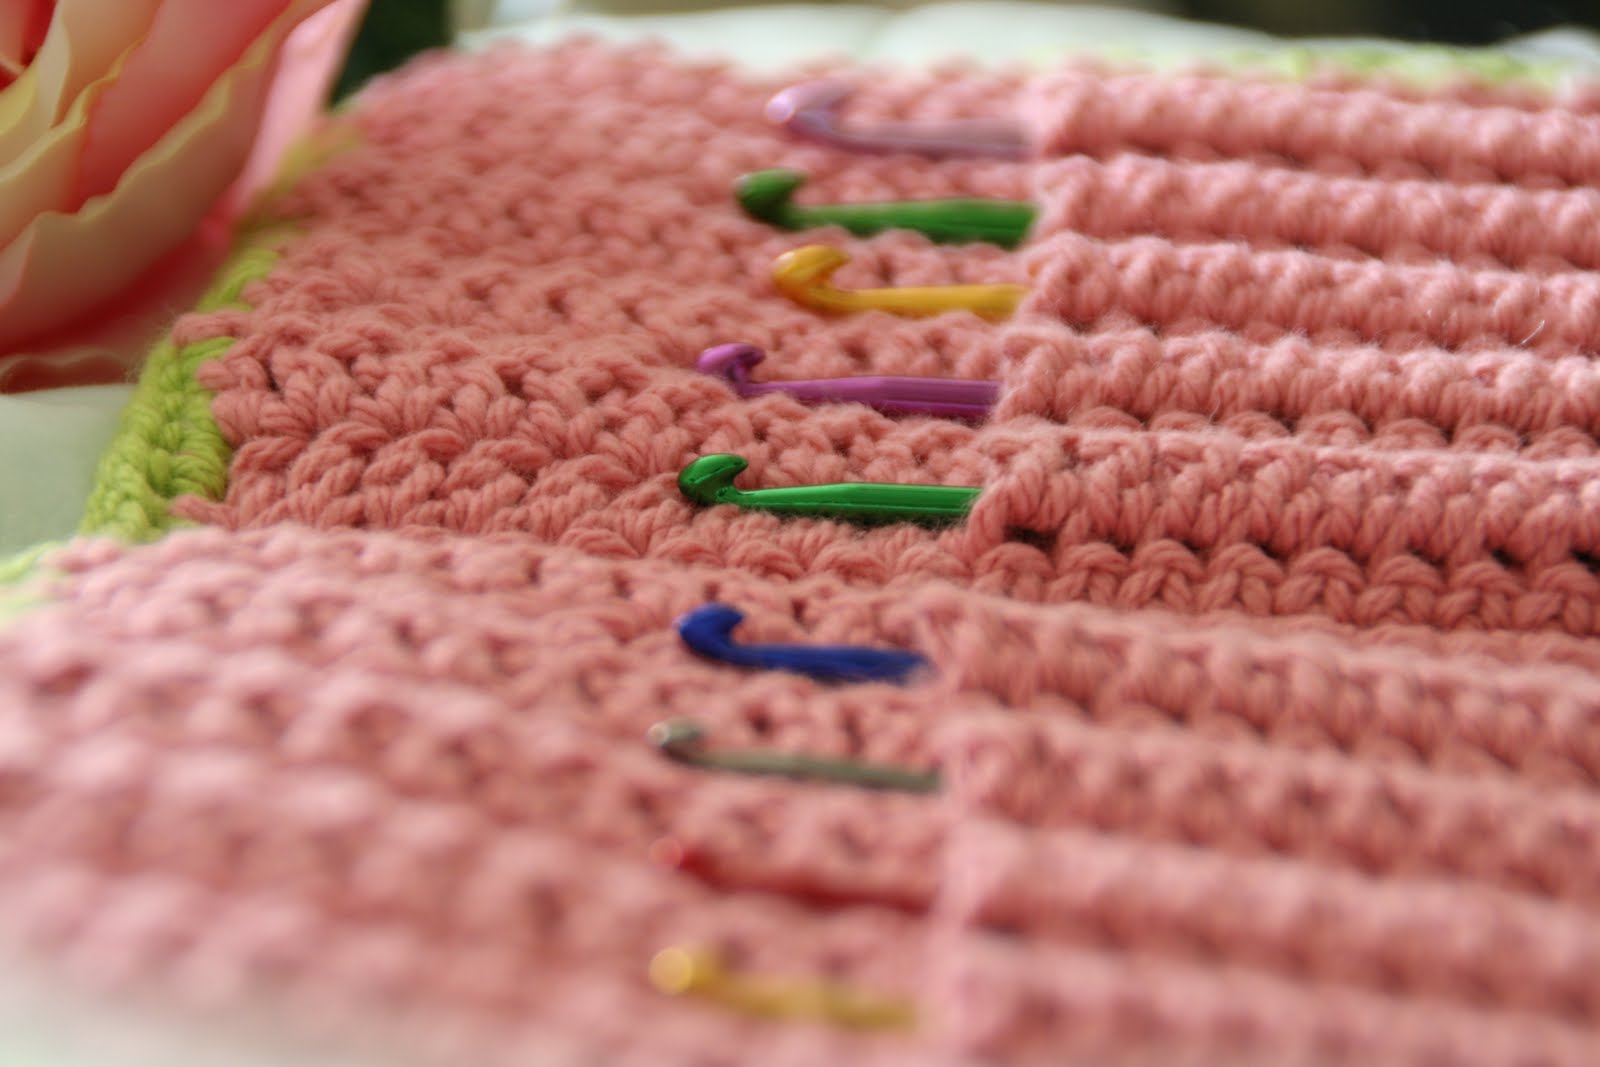 Crochet hook case pattern: Crochet pattern